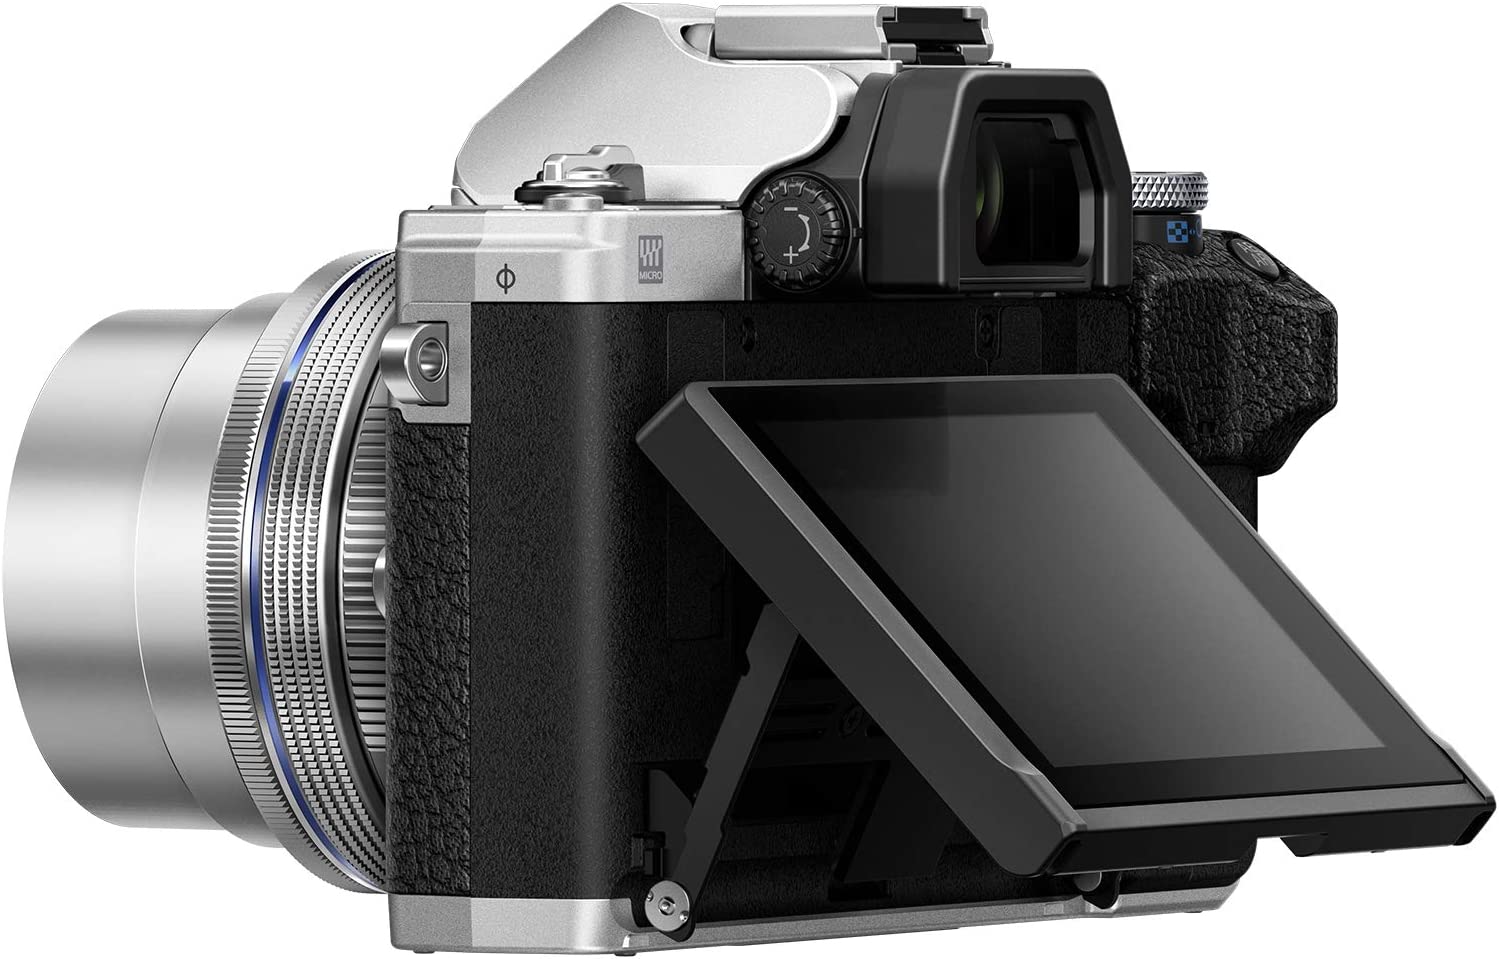 Olympus OM-D E-M10 Mark IV Black Camera Body & Olympus M.Zuiko Digital  14-42mm F3.5-5.6 II R Lens